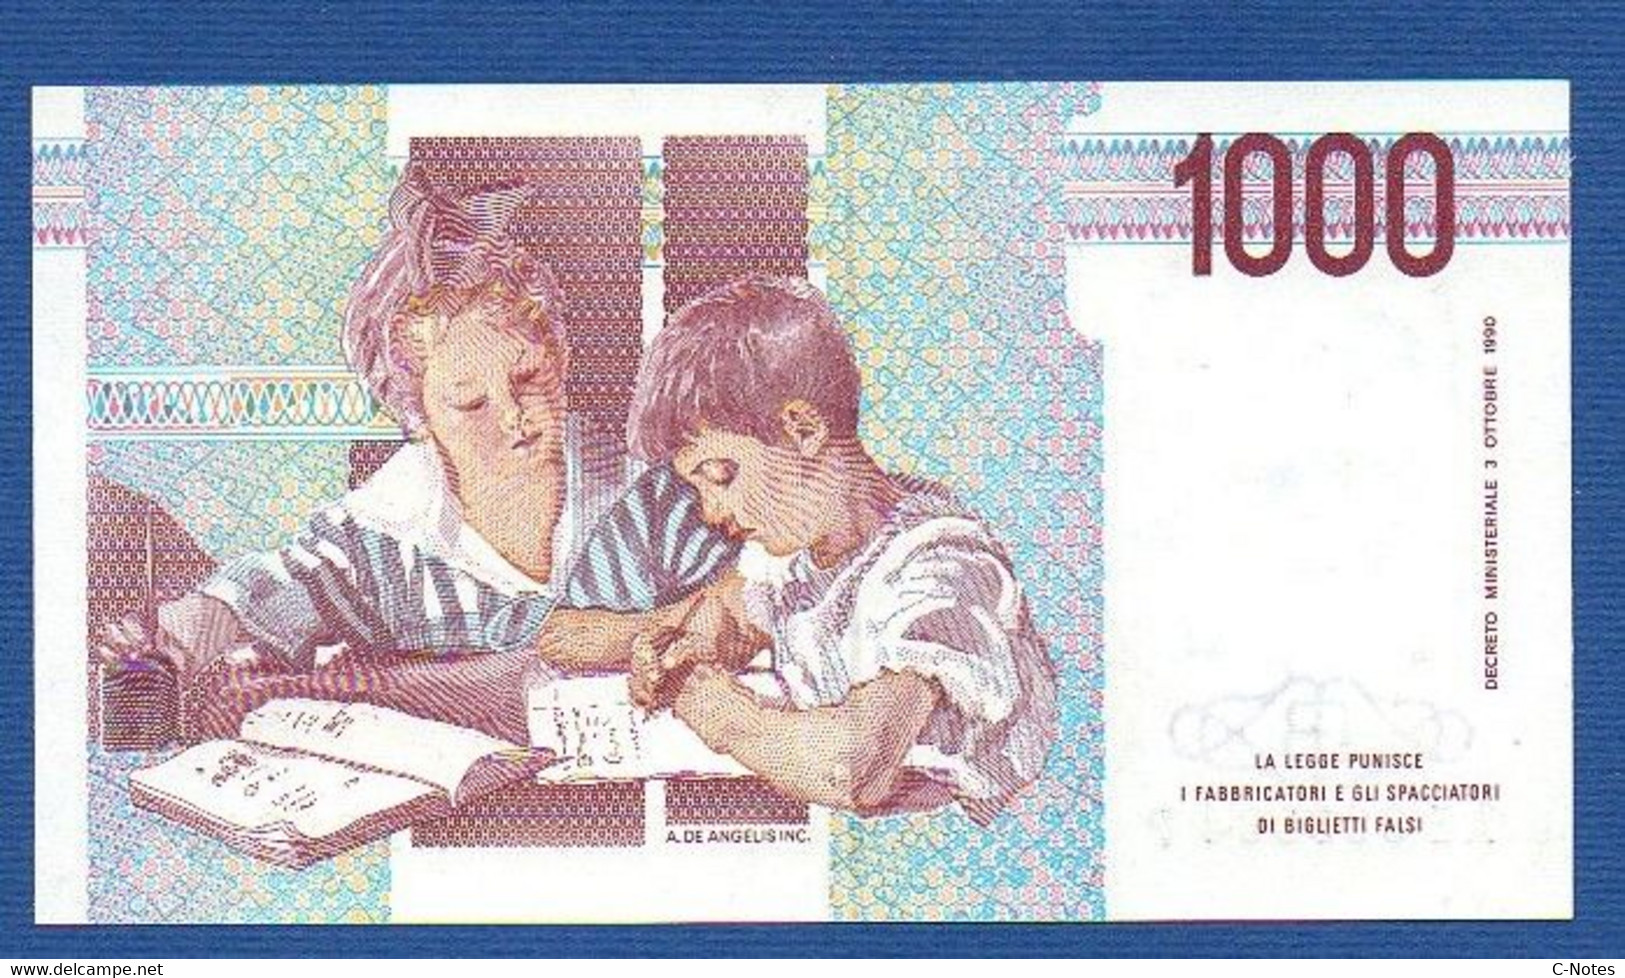 ITALY - P.114a – 1.000 LIRE M. Montessori 03.10.1990  UNC, Serie FA 971107 U - 1000 Lire